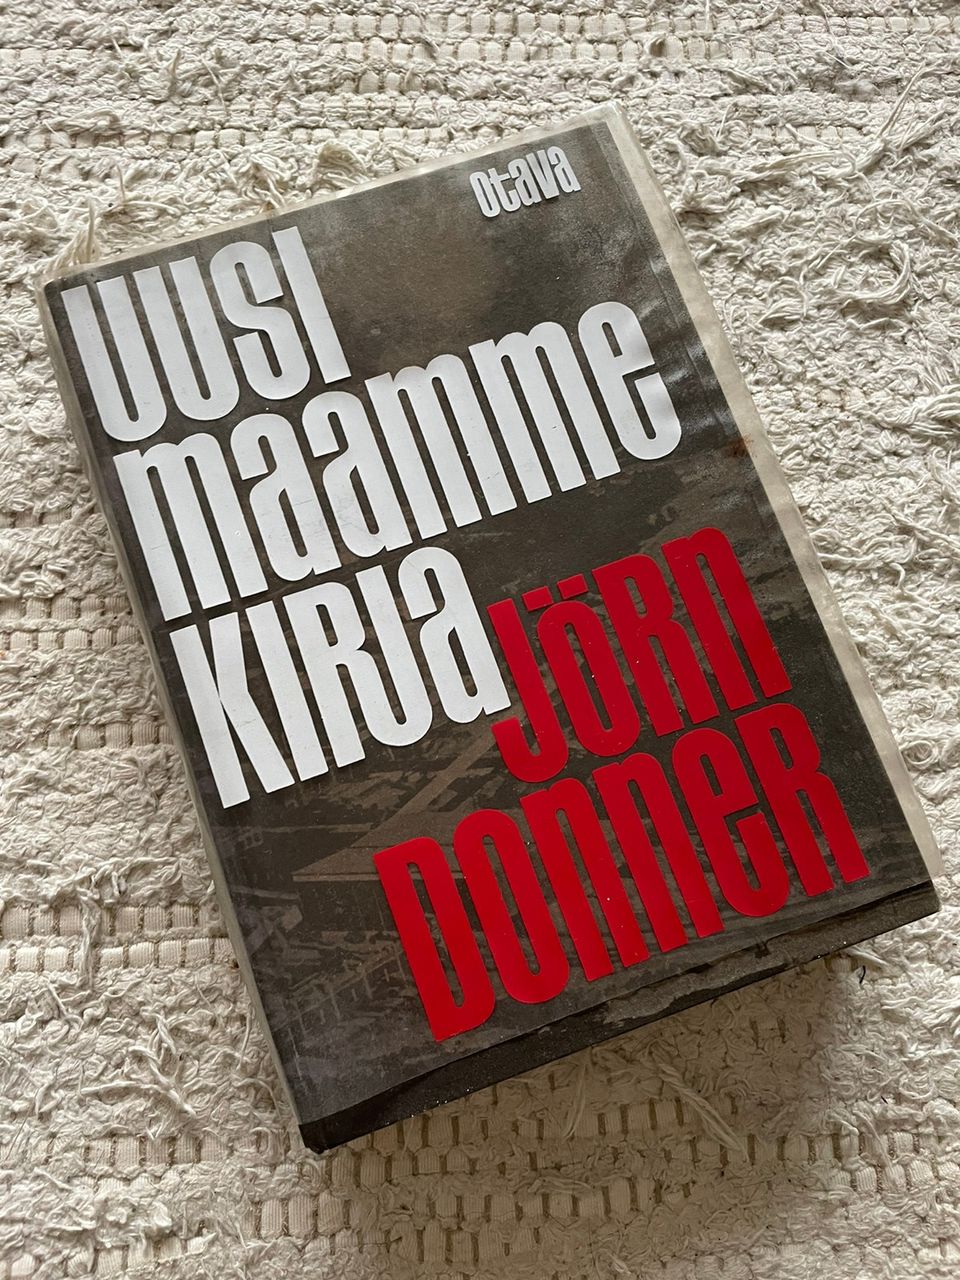 Uusi maammekirja - Jörn Donner (1967)